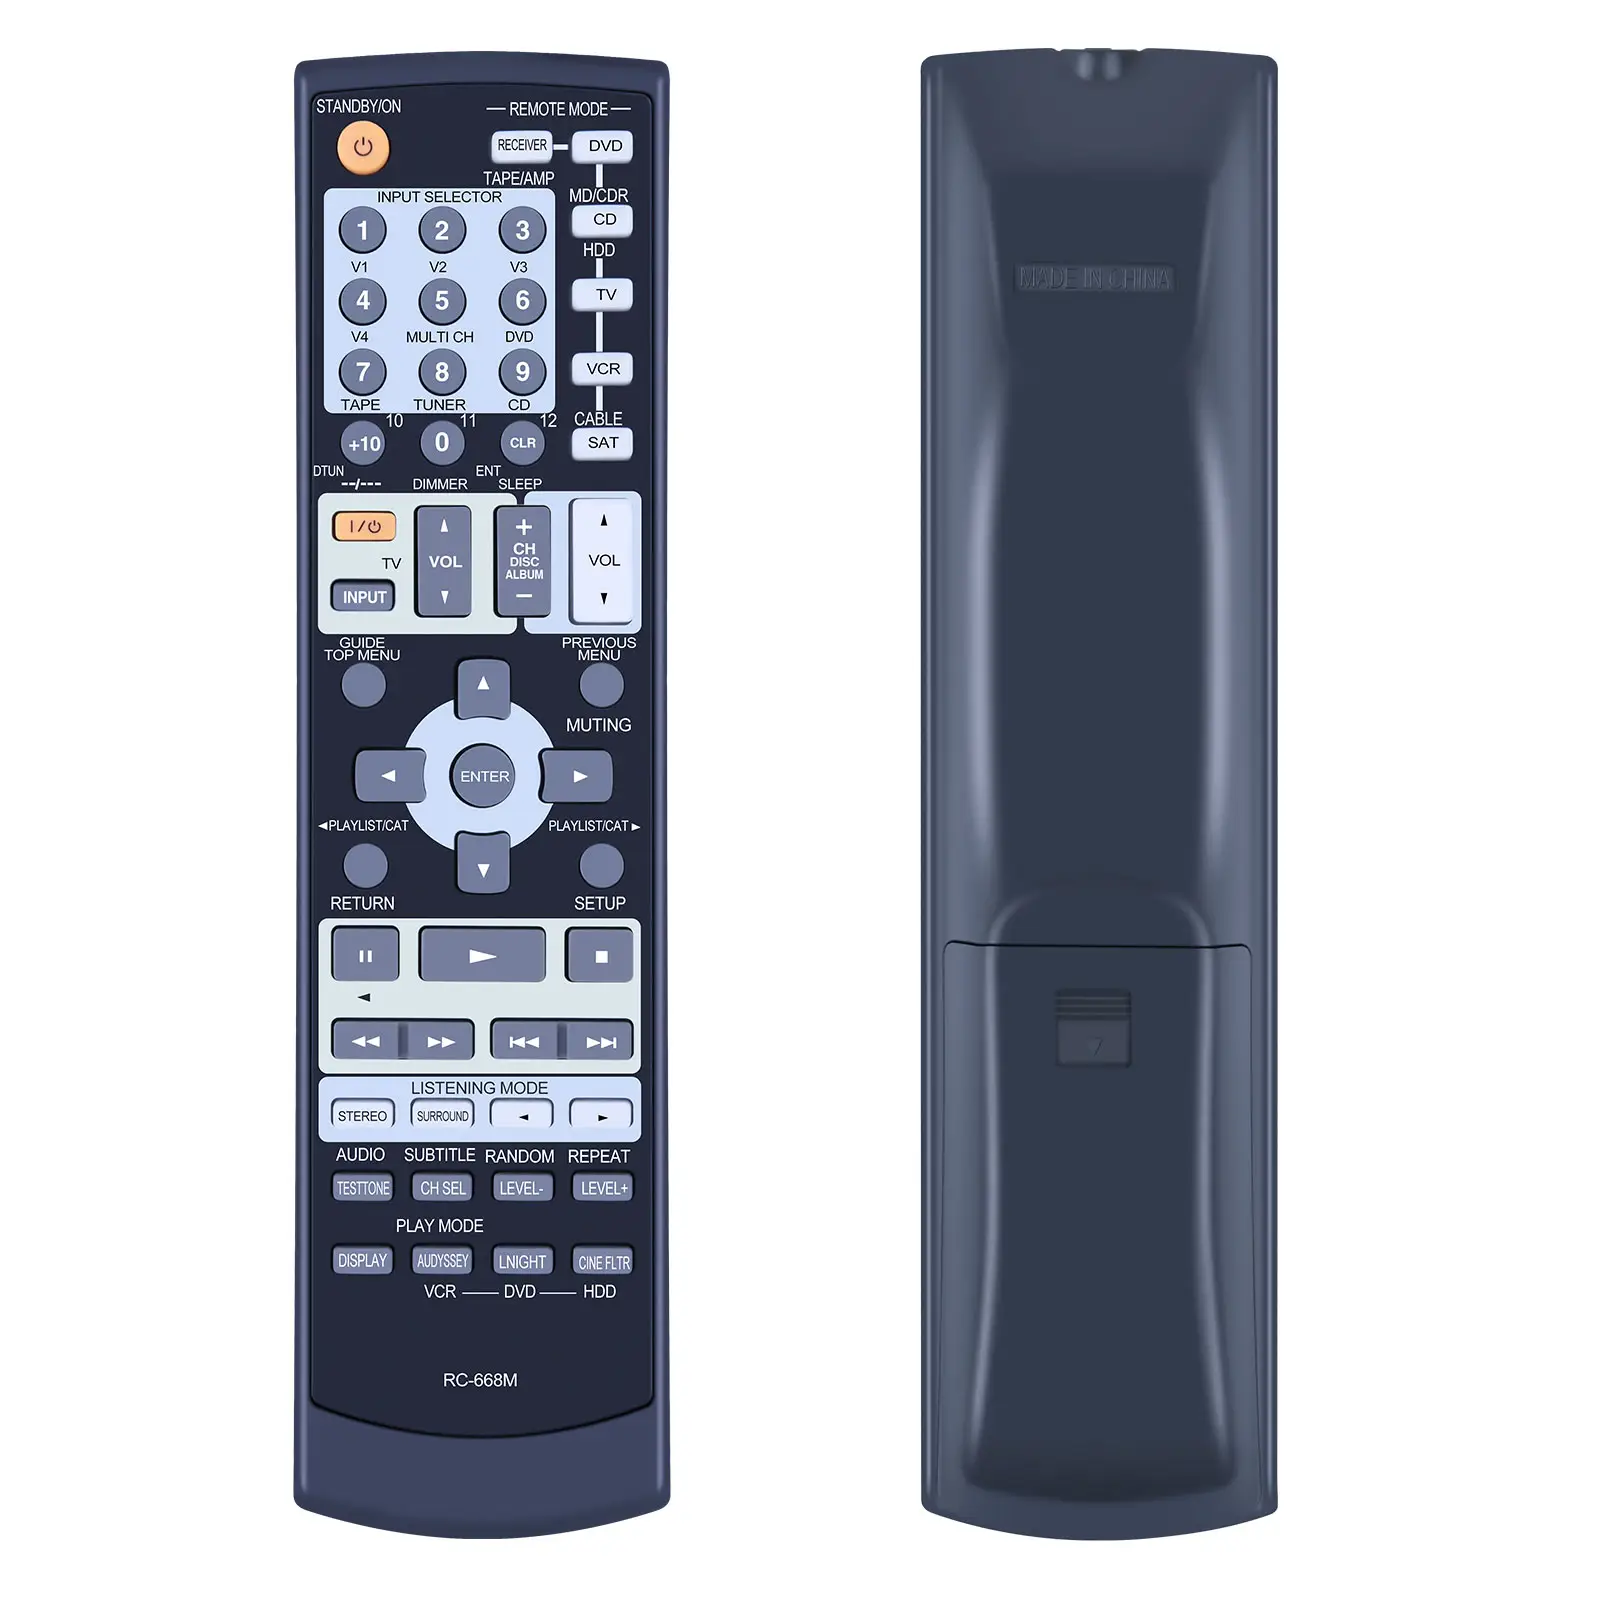 RC-668M Remote Control ajaib, versi inframerah untuk Lg Smart TV Magic Remote Control